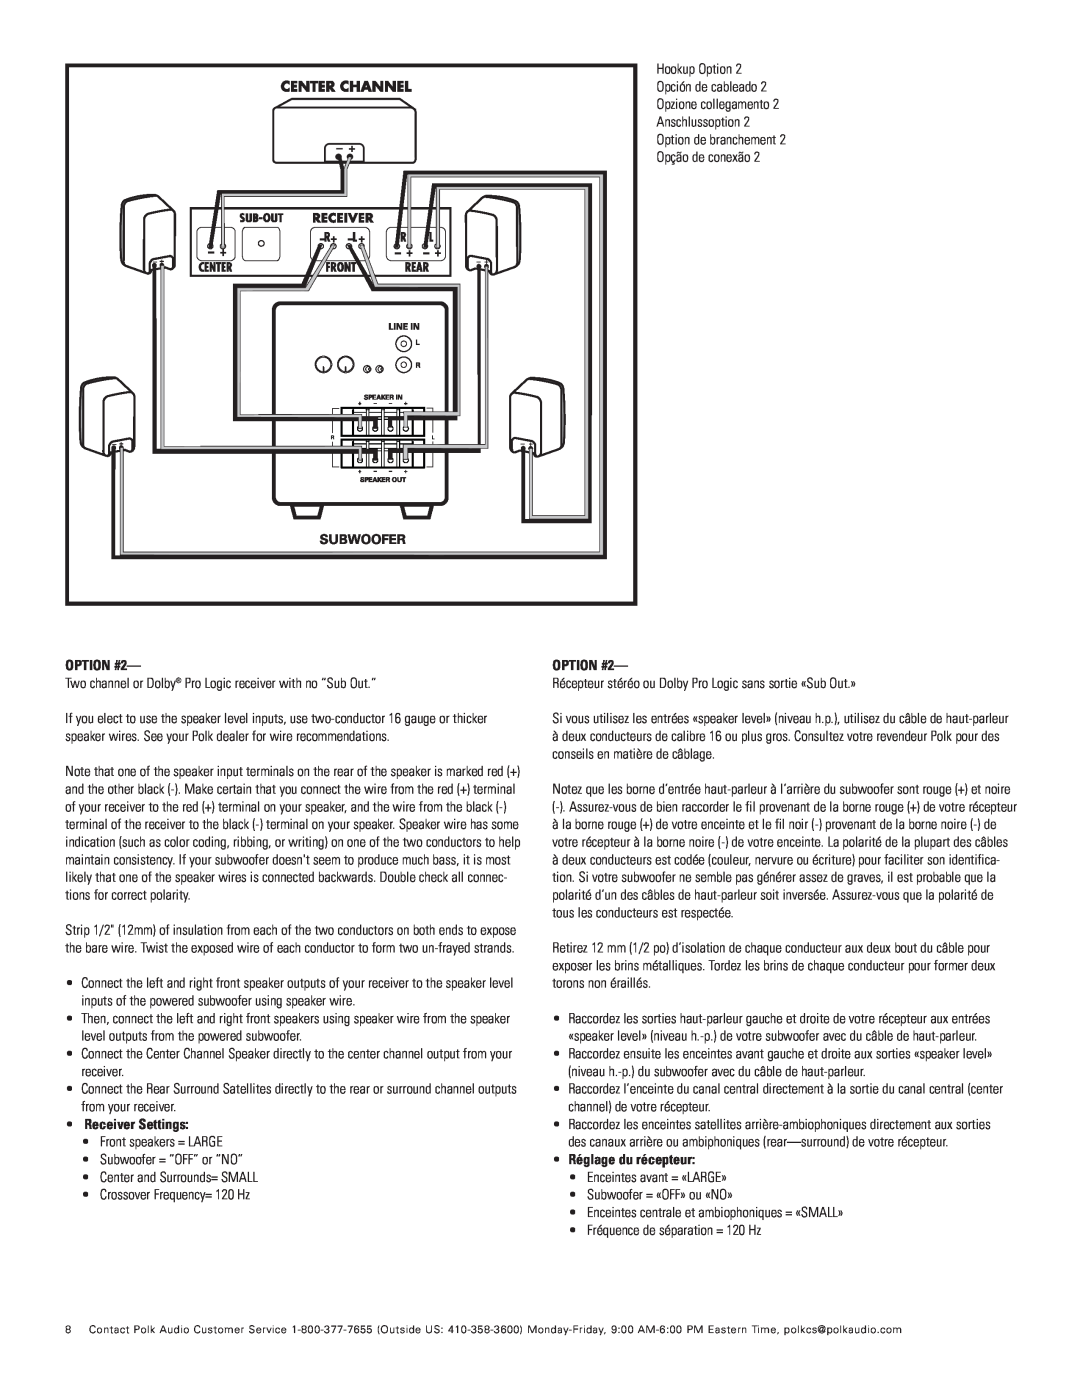 Polk Audio RM6750 important safety instructions OPTION #2, Receiver Settings, Réglage du récepteur 